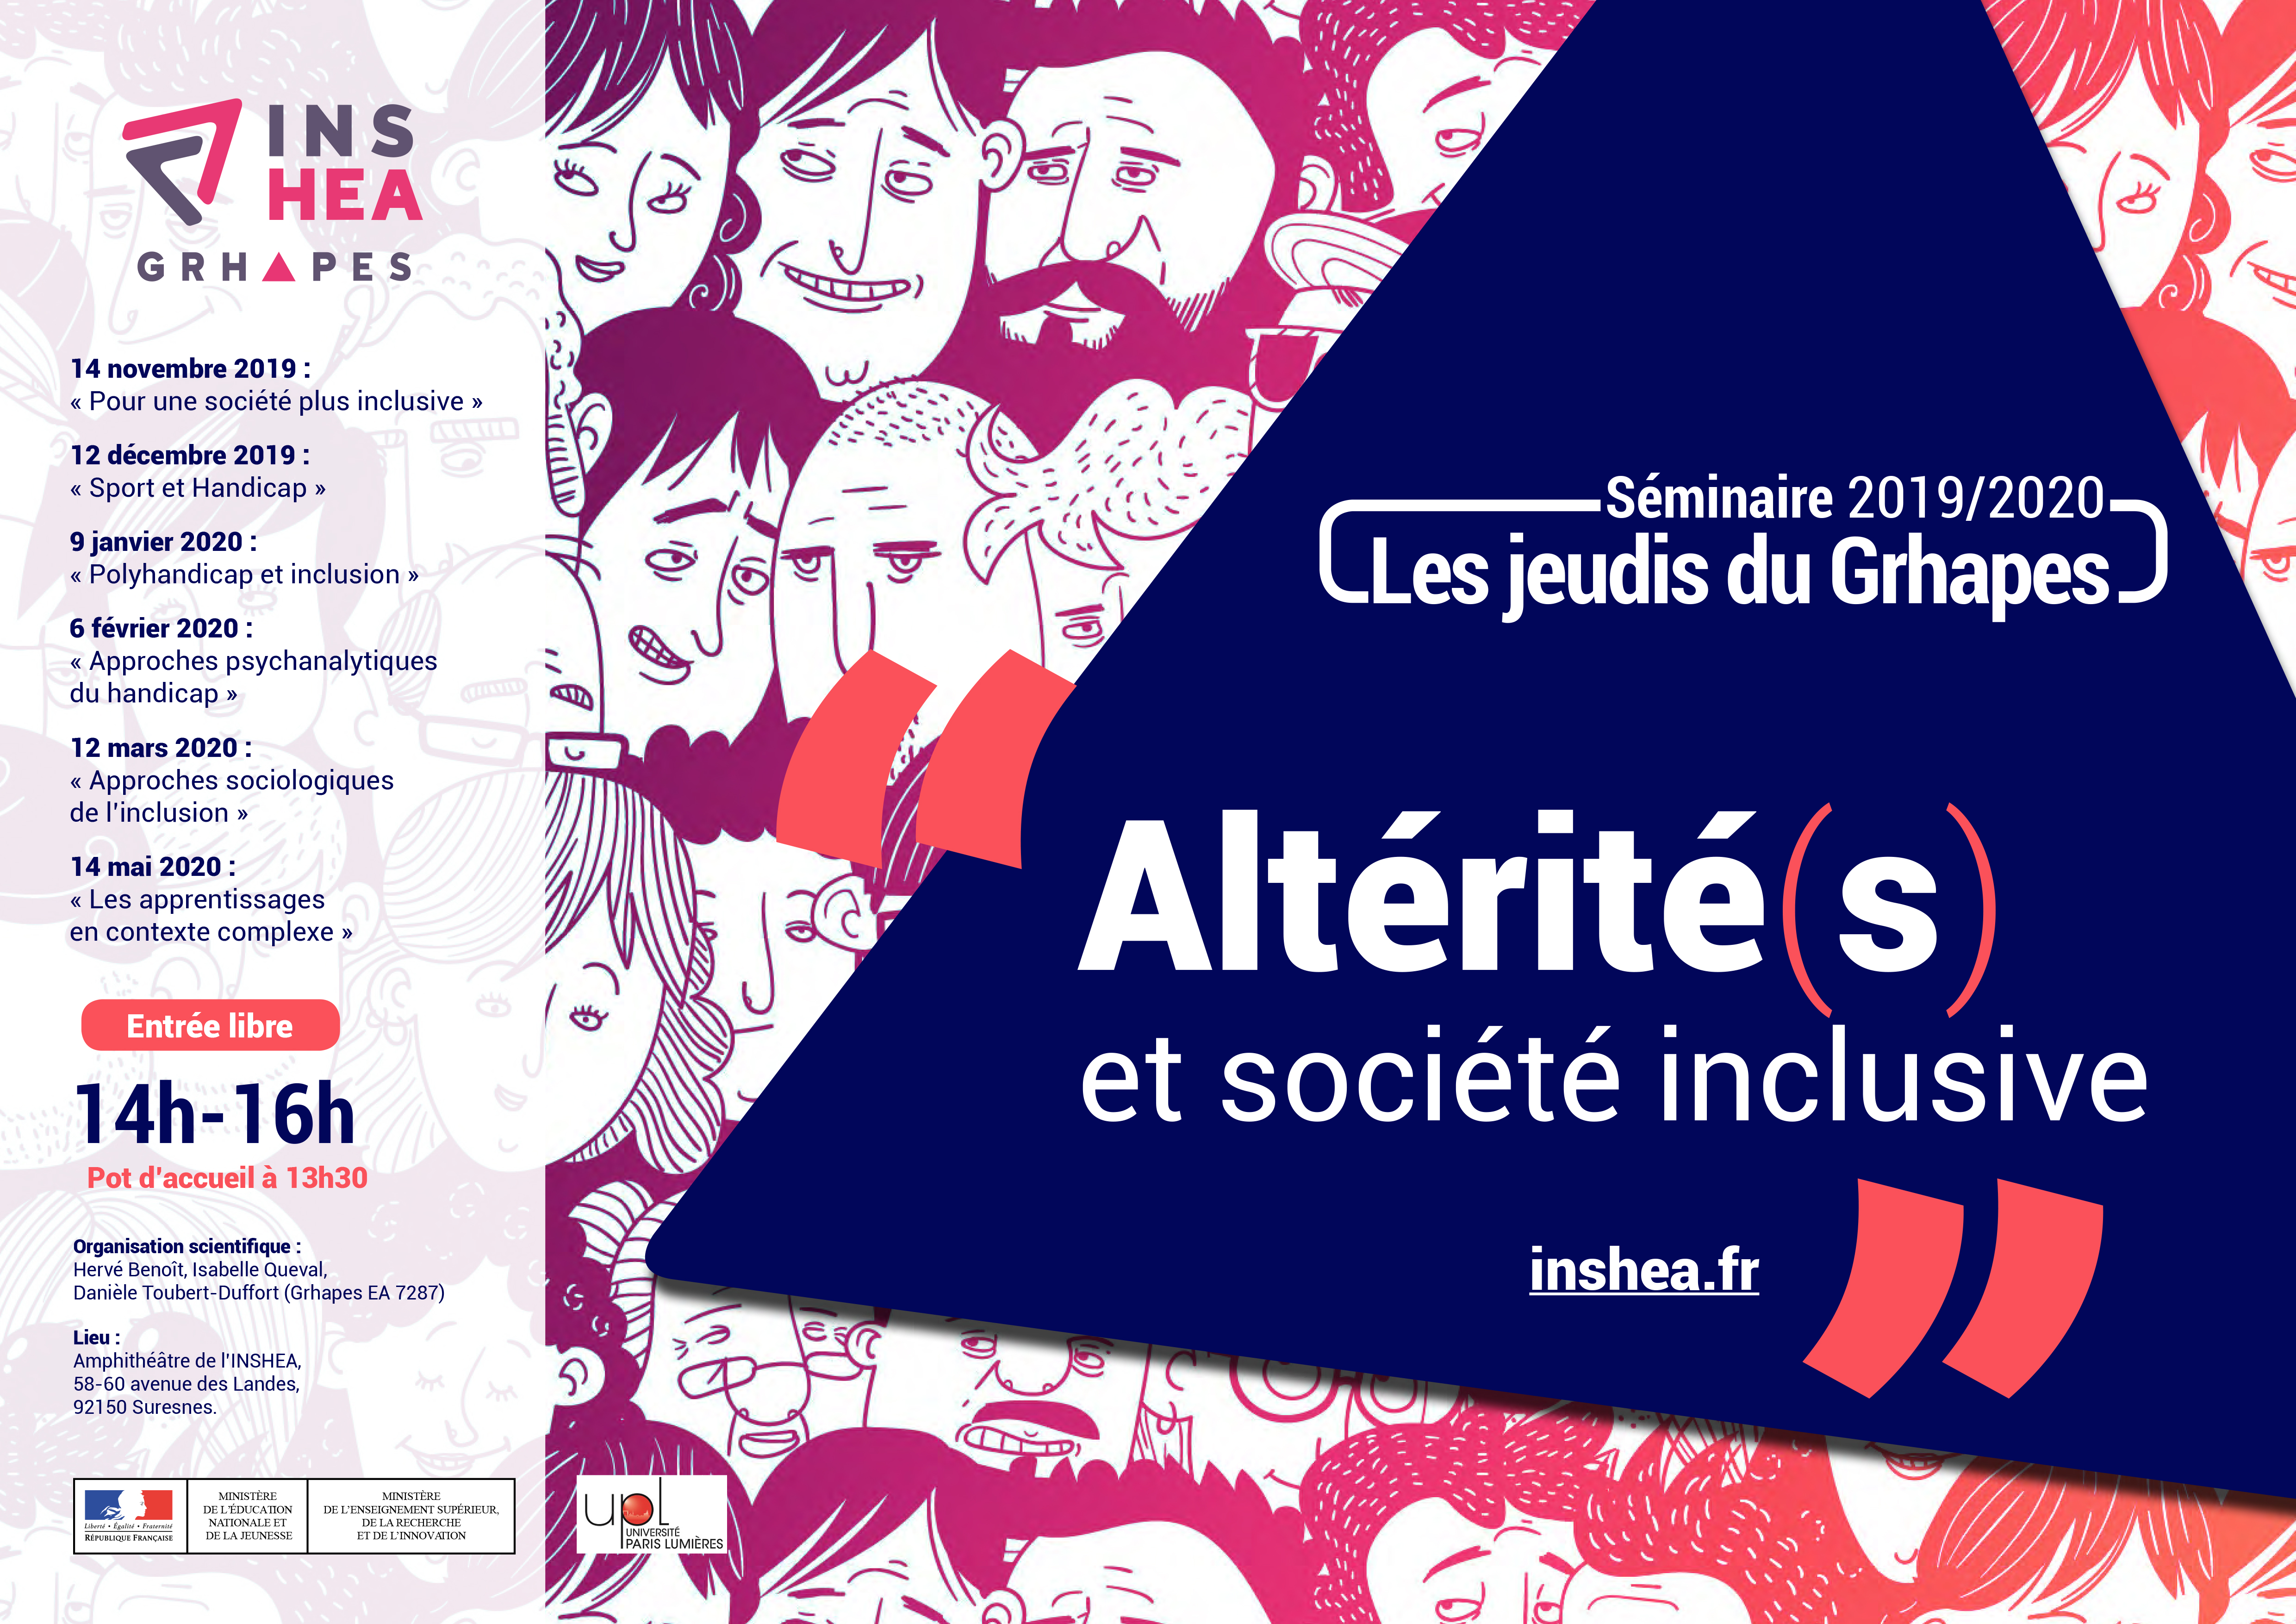 Les jeudis du Grhapes :  « Pour une société plus inclusive », Charles Gardou 14 novembre 2019